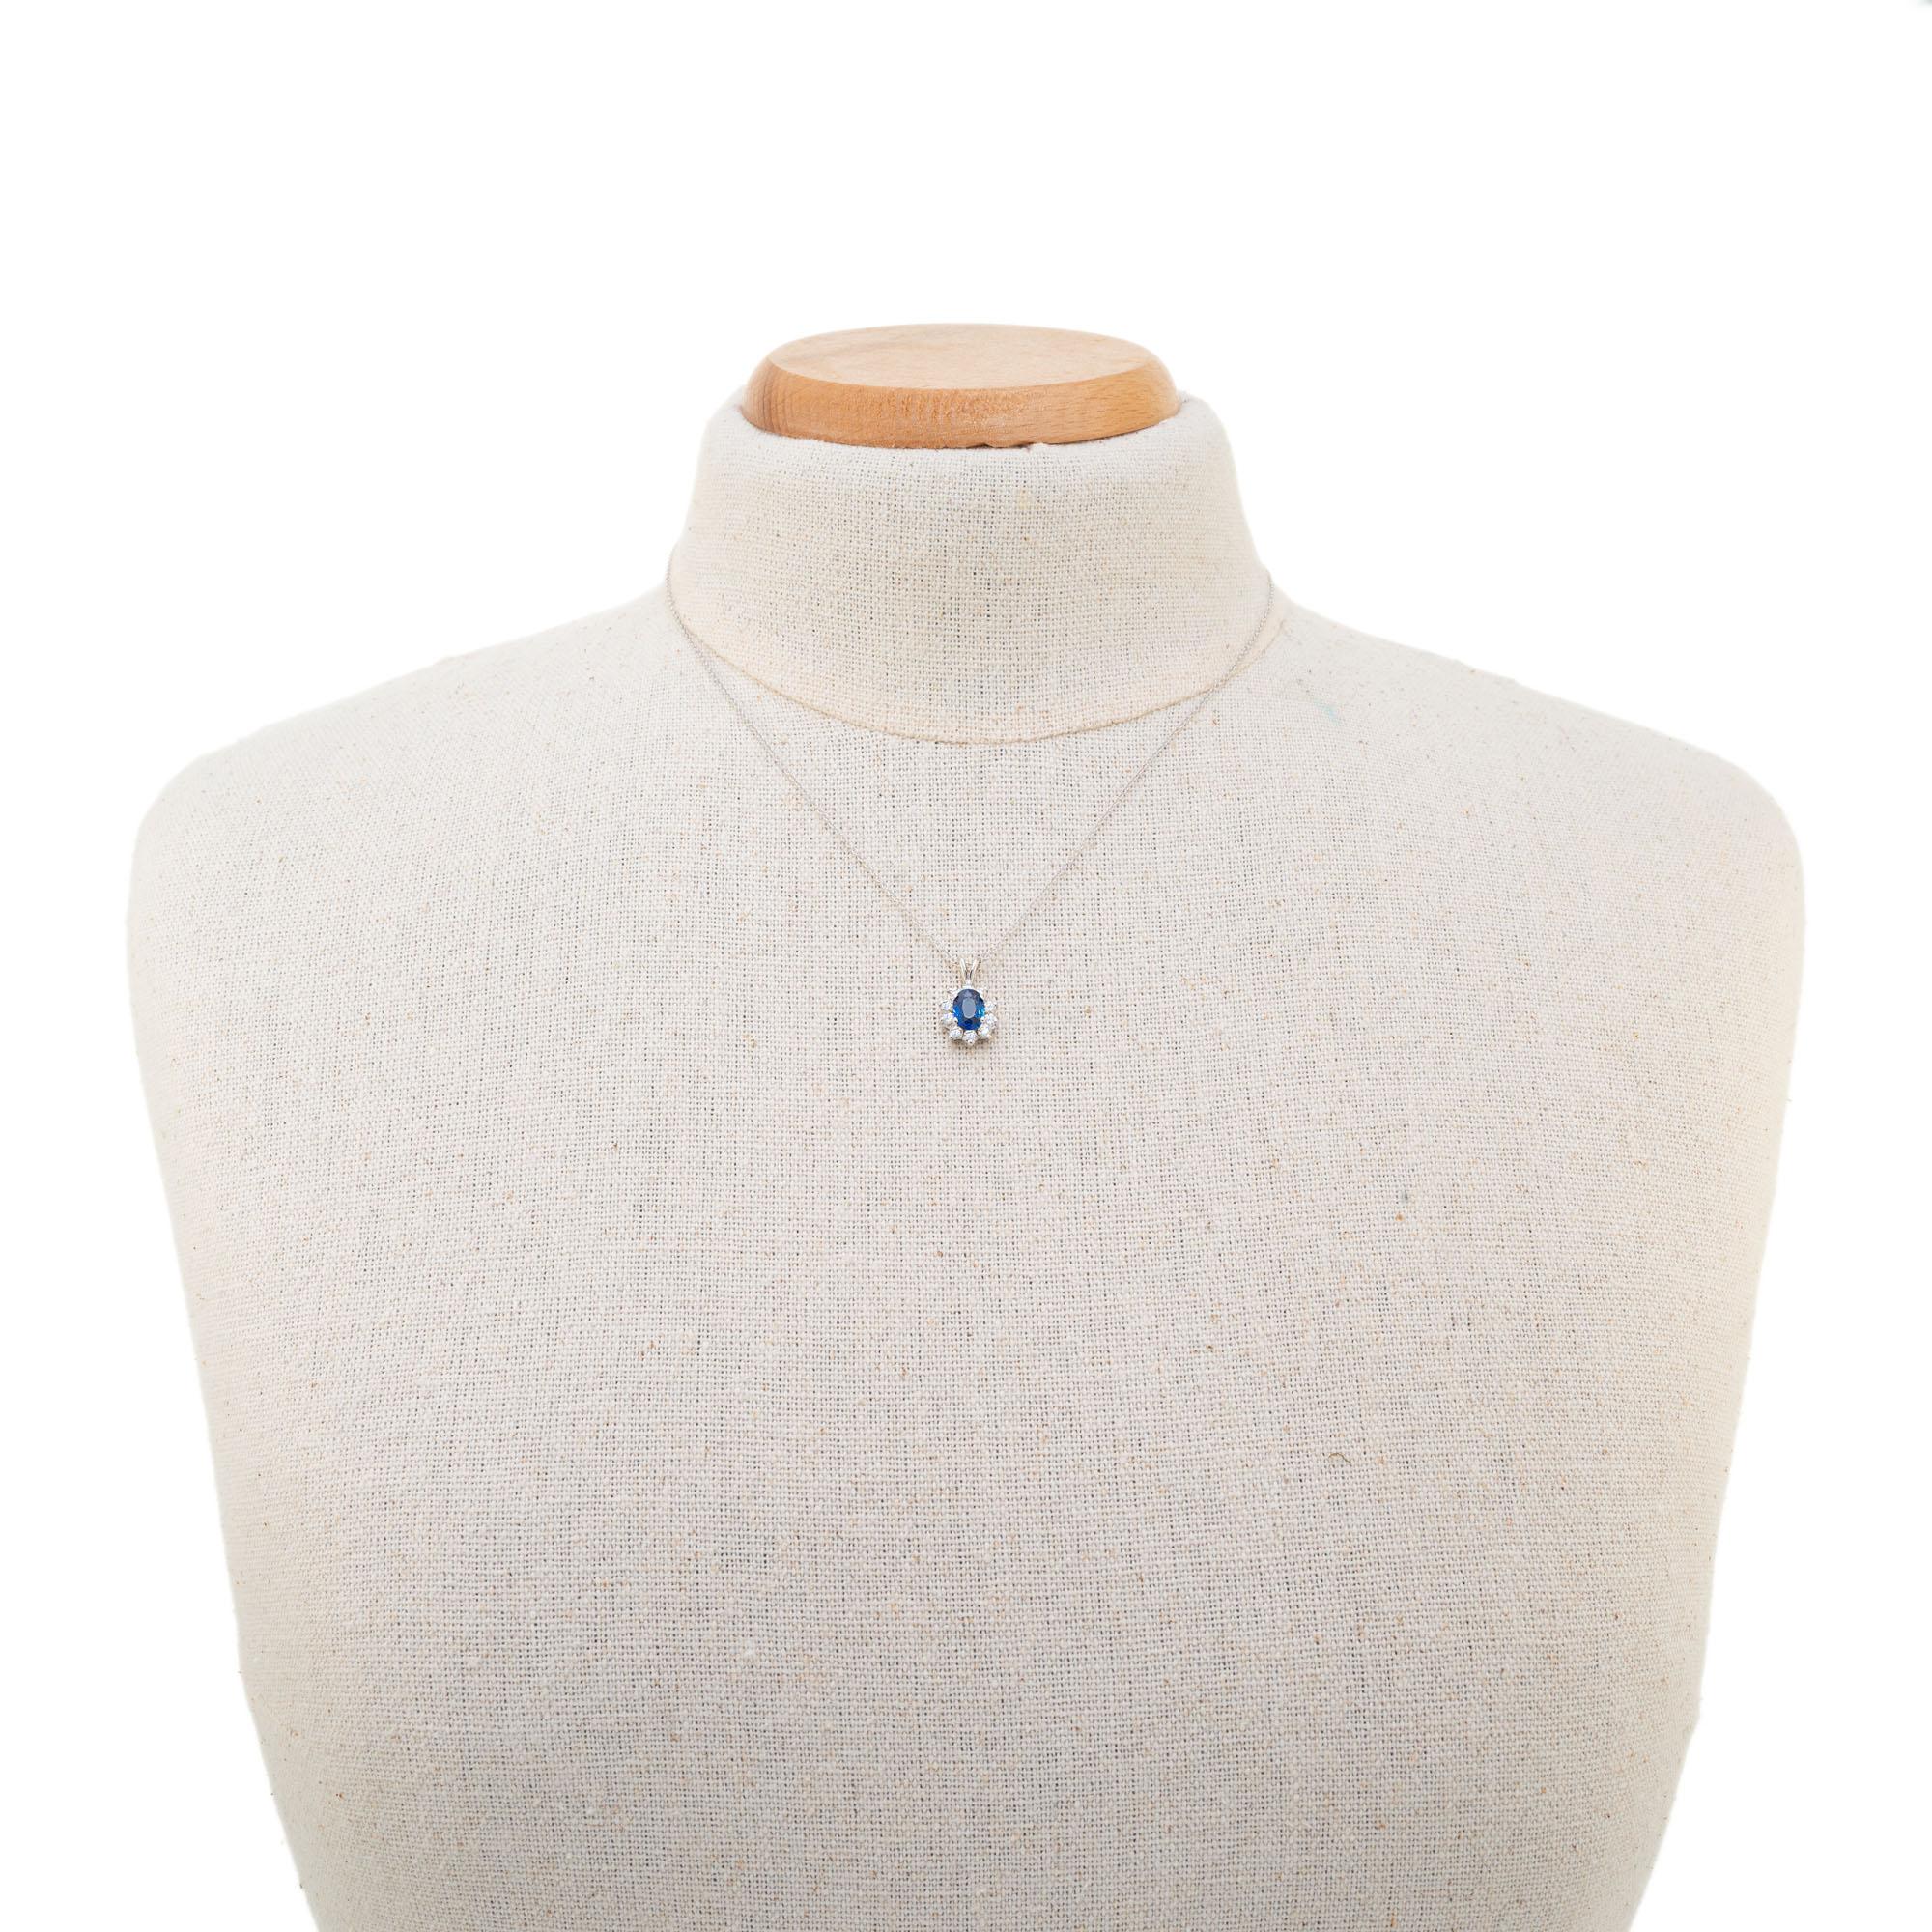 Women's 1.00 Carat Blue Sapphire Diamond White Gold Pendant Necklace For Sale